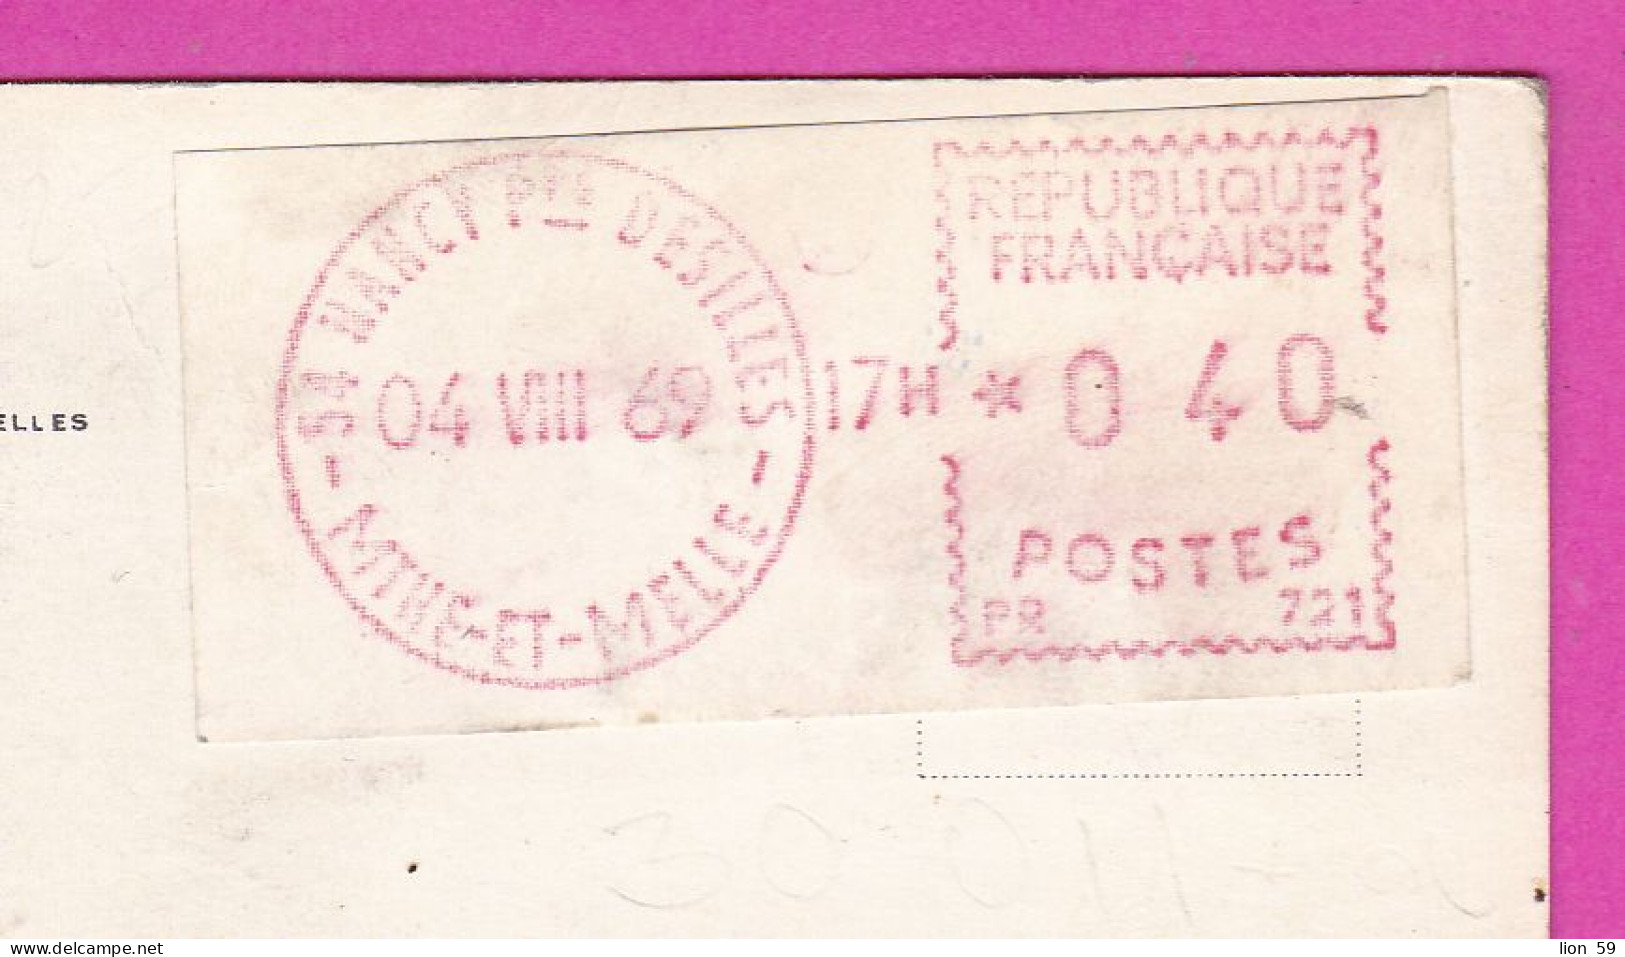 294104 / France - PARIS Place De L'Opéra PC 1969 NANCY Desilles USED 0.40 Fr. - 04.08.1969 Machine Stamps (ATM) - 1969 Montgeron – Papier Blanc – Frama/Satas